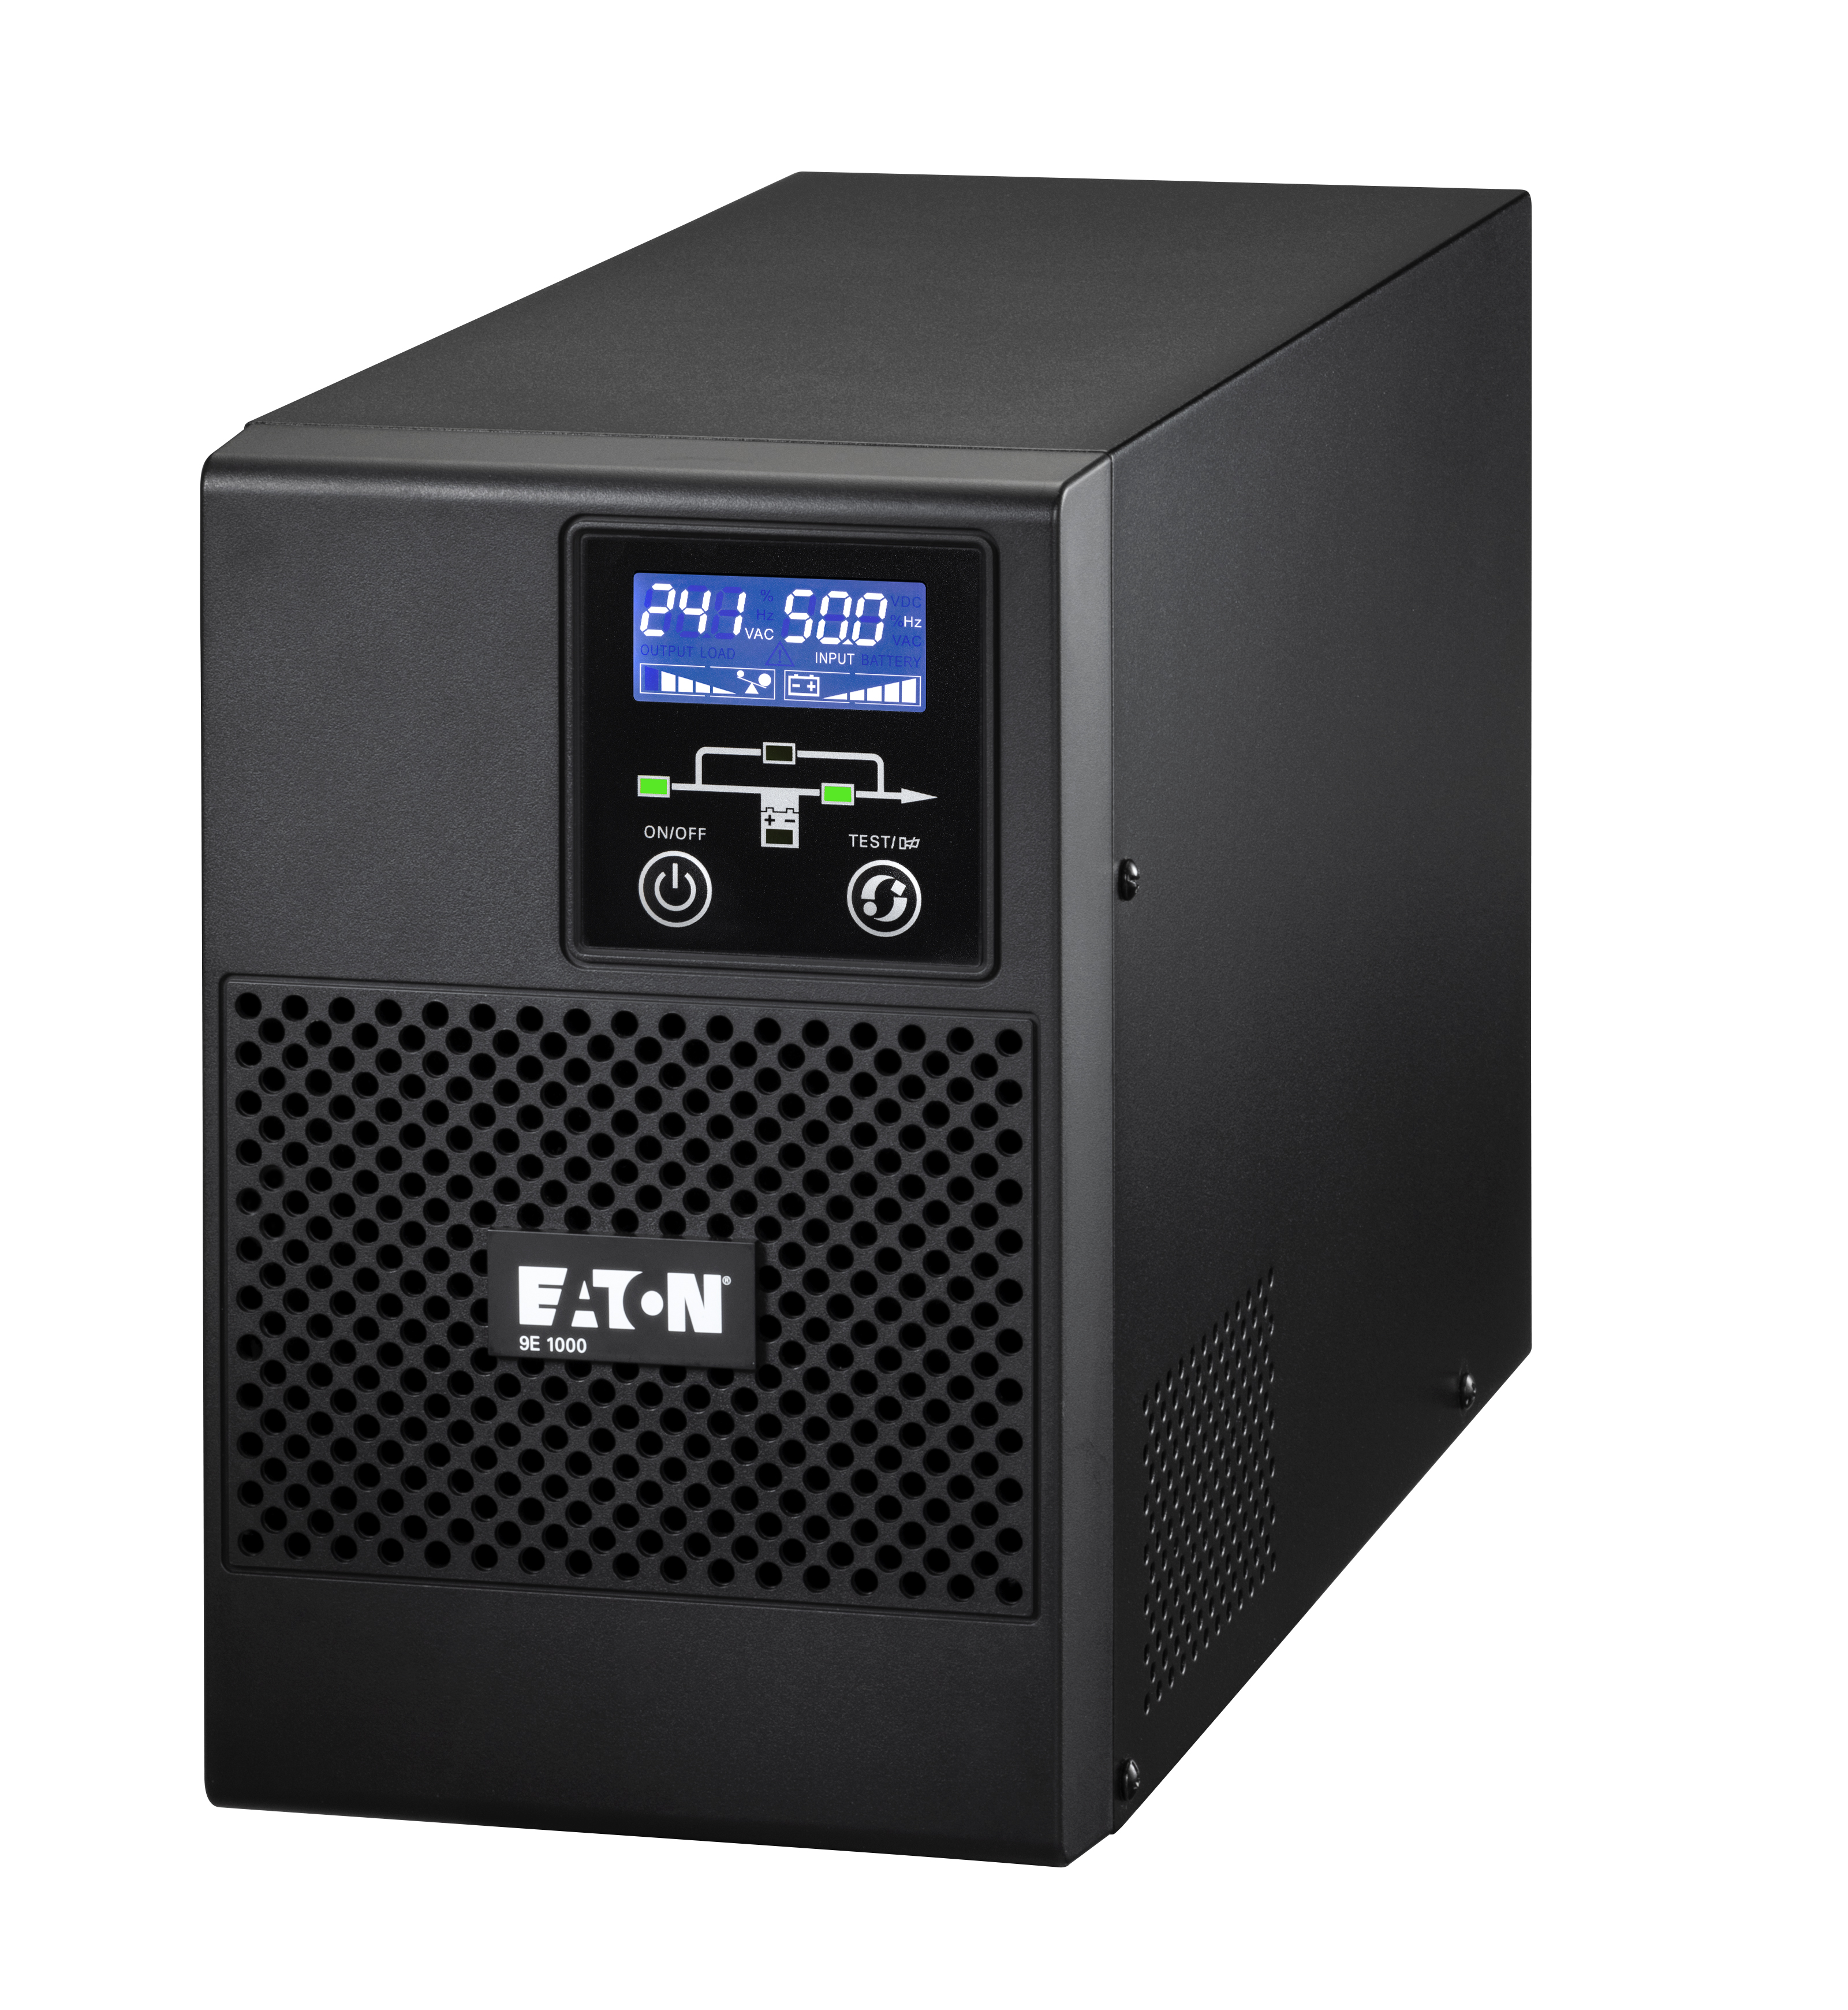 ИБП Eaton 9E 1000i, 1000VA, 800W, IEC, розеток - 4, USB, черный (9E1000I)